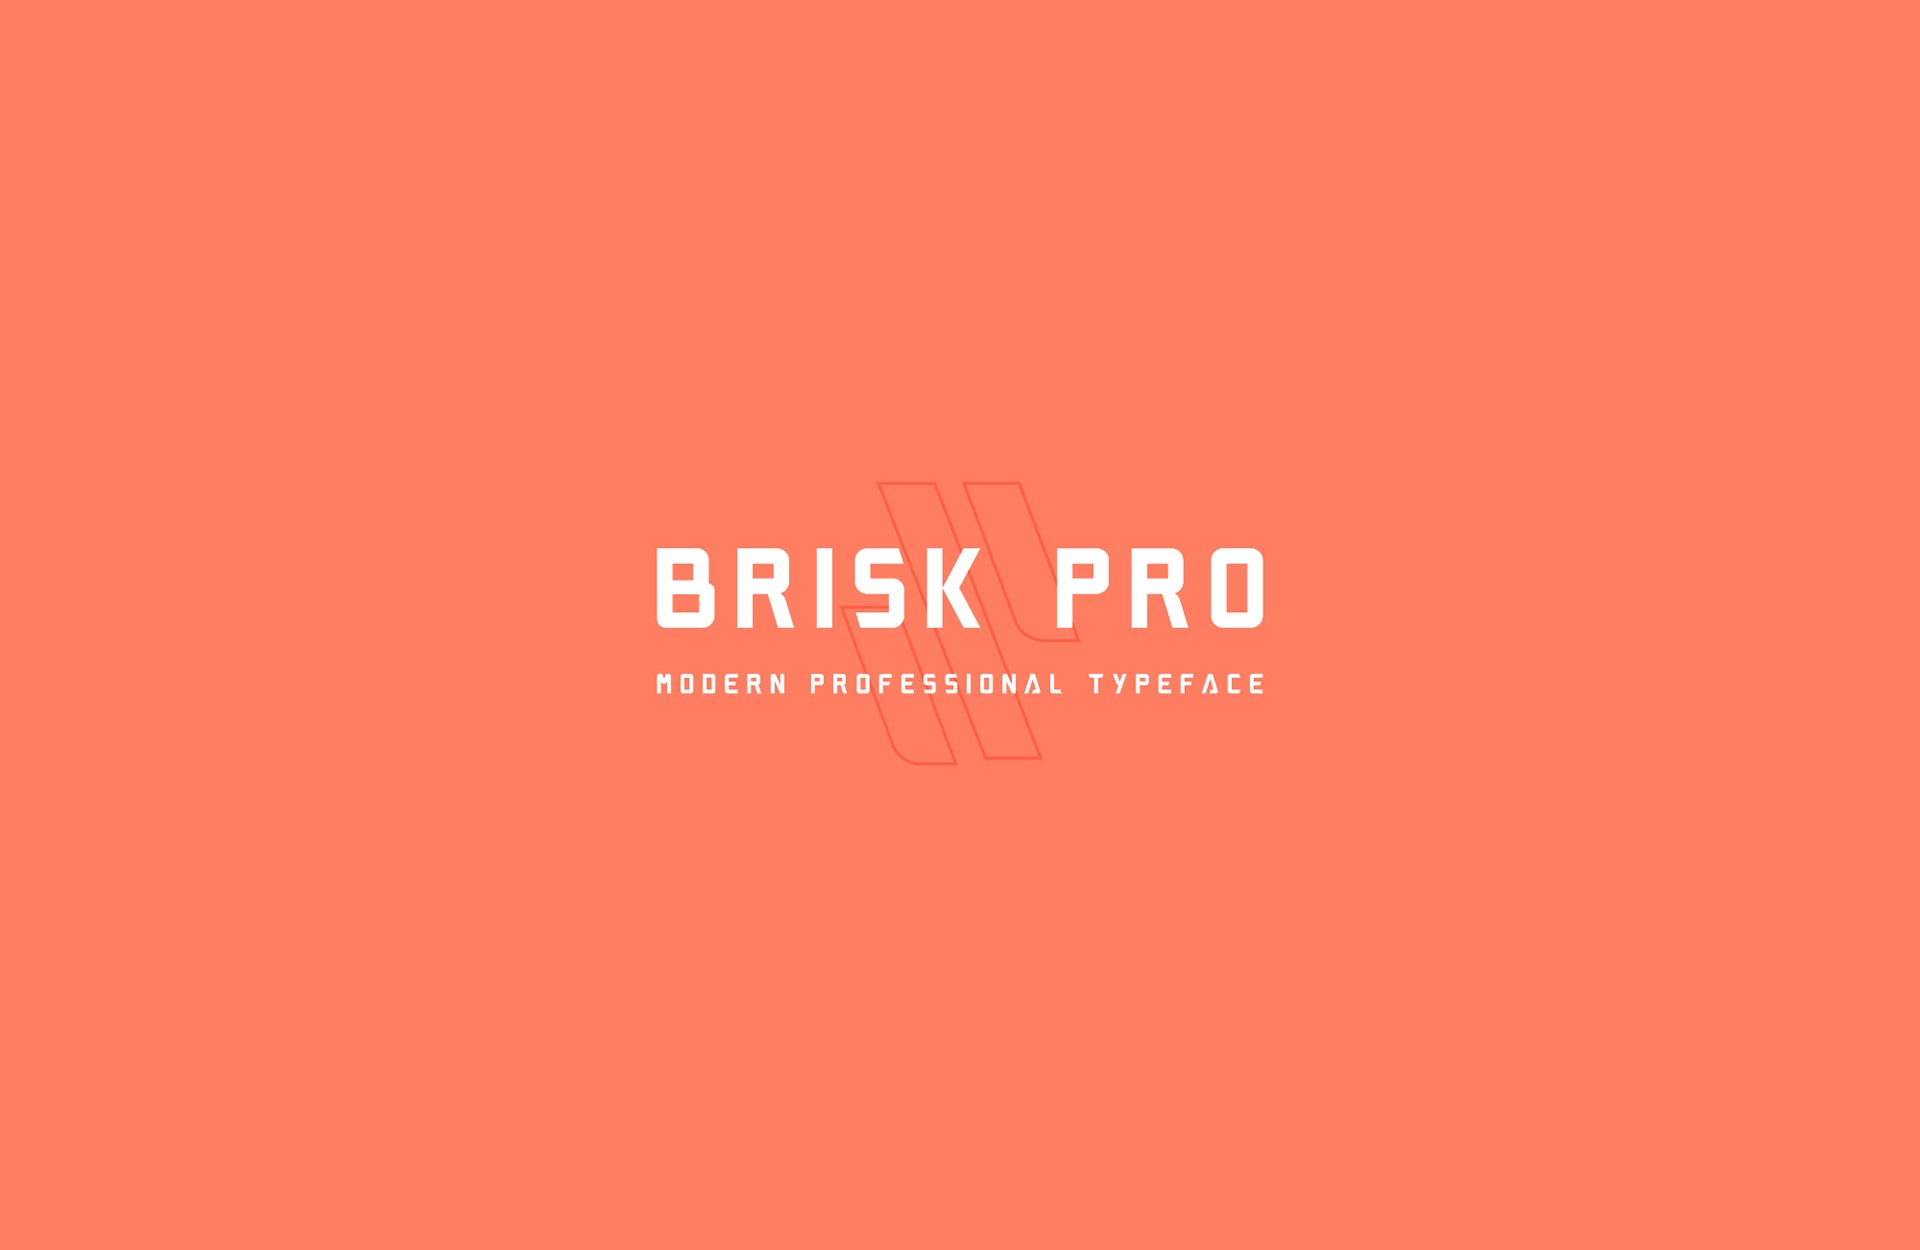 Font Brisk Pro